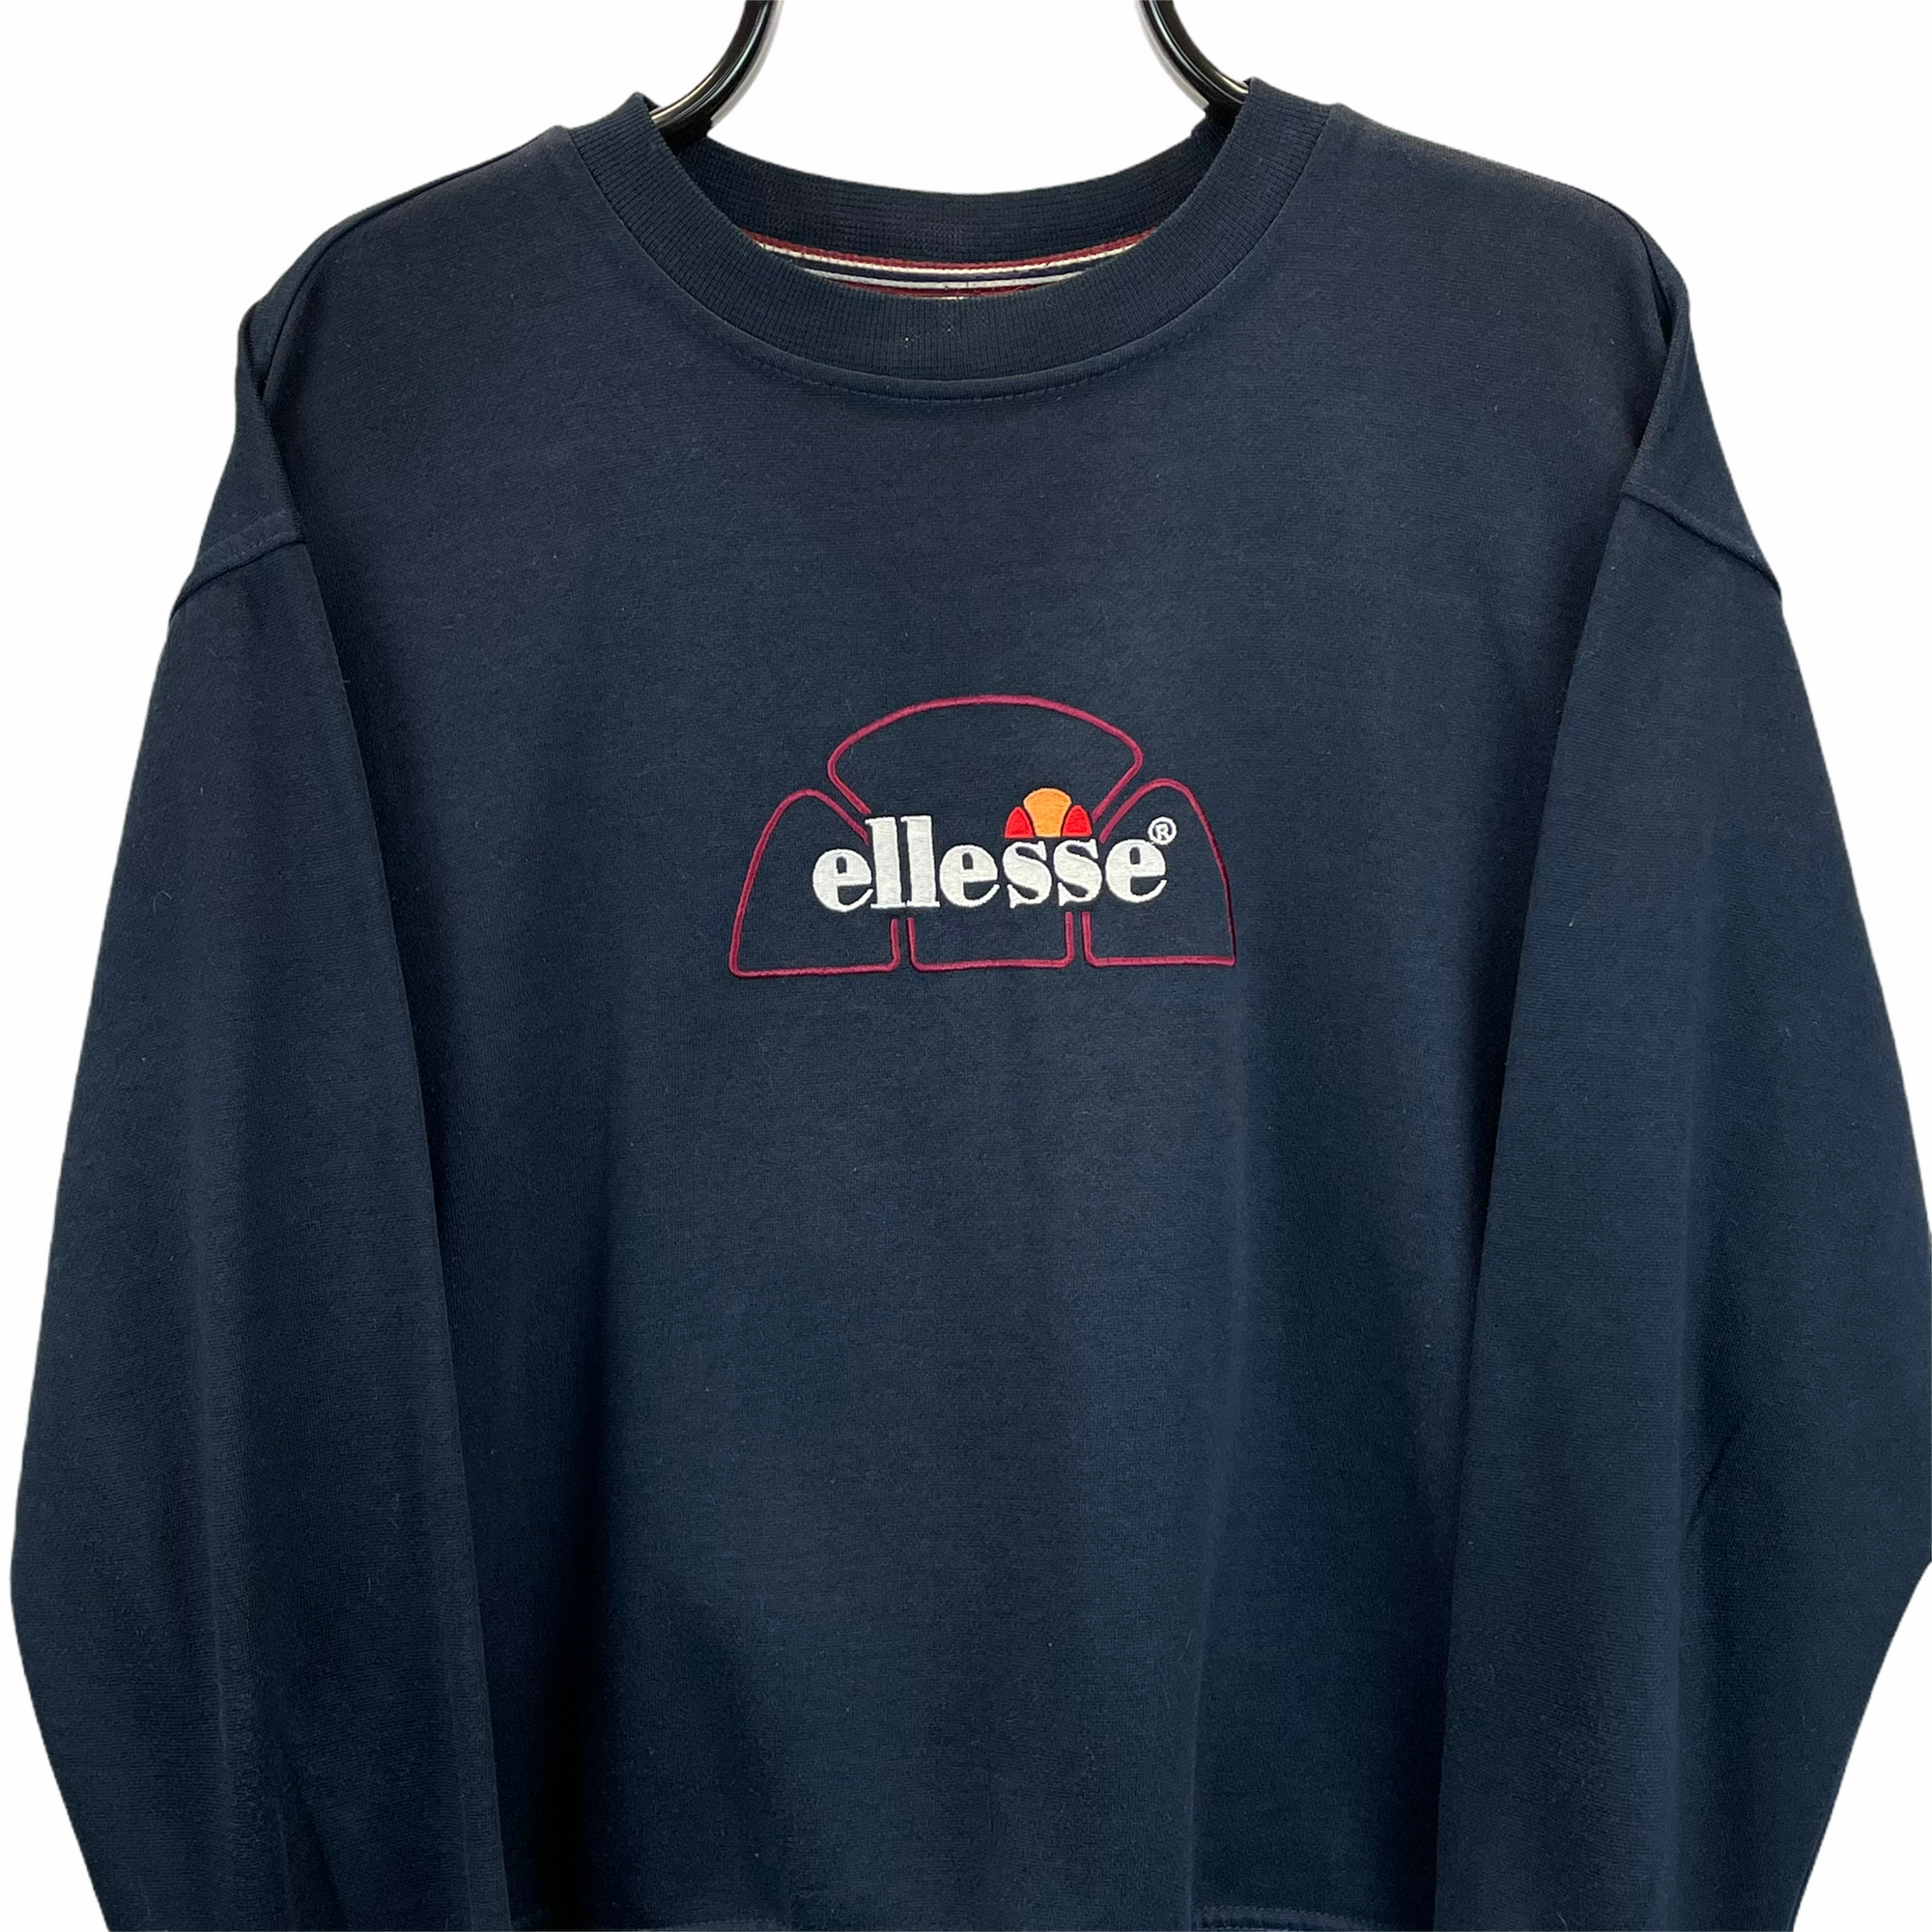 Vintage 90s Ellesse Lightweight Spellout Sweatshirt in Navy - Men's XS/Women's Small